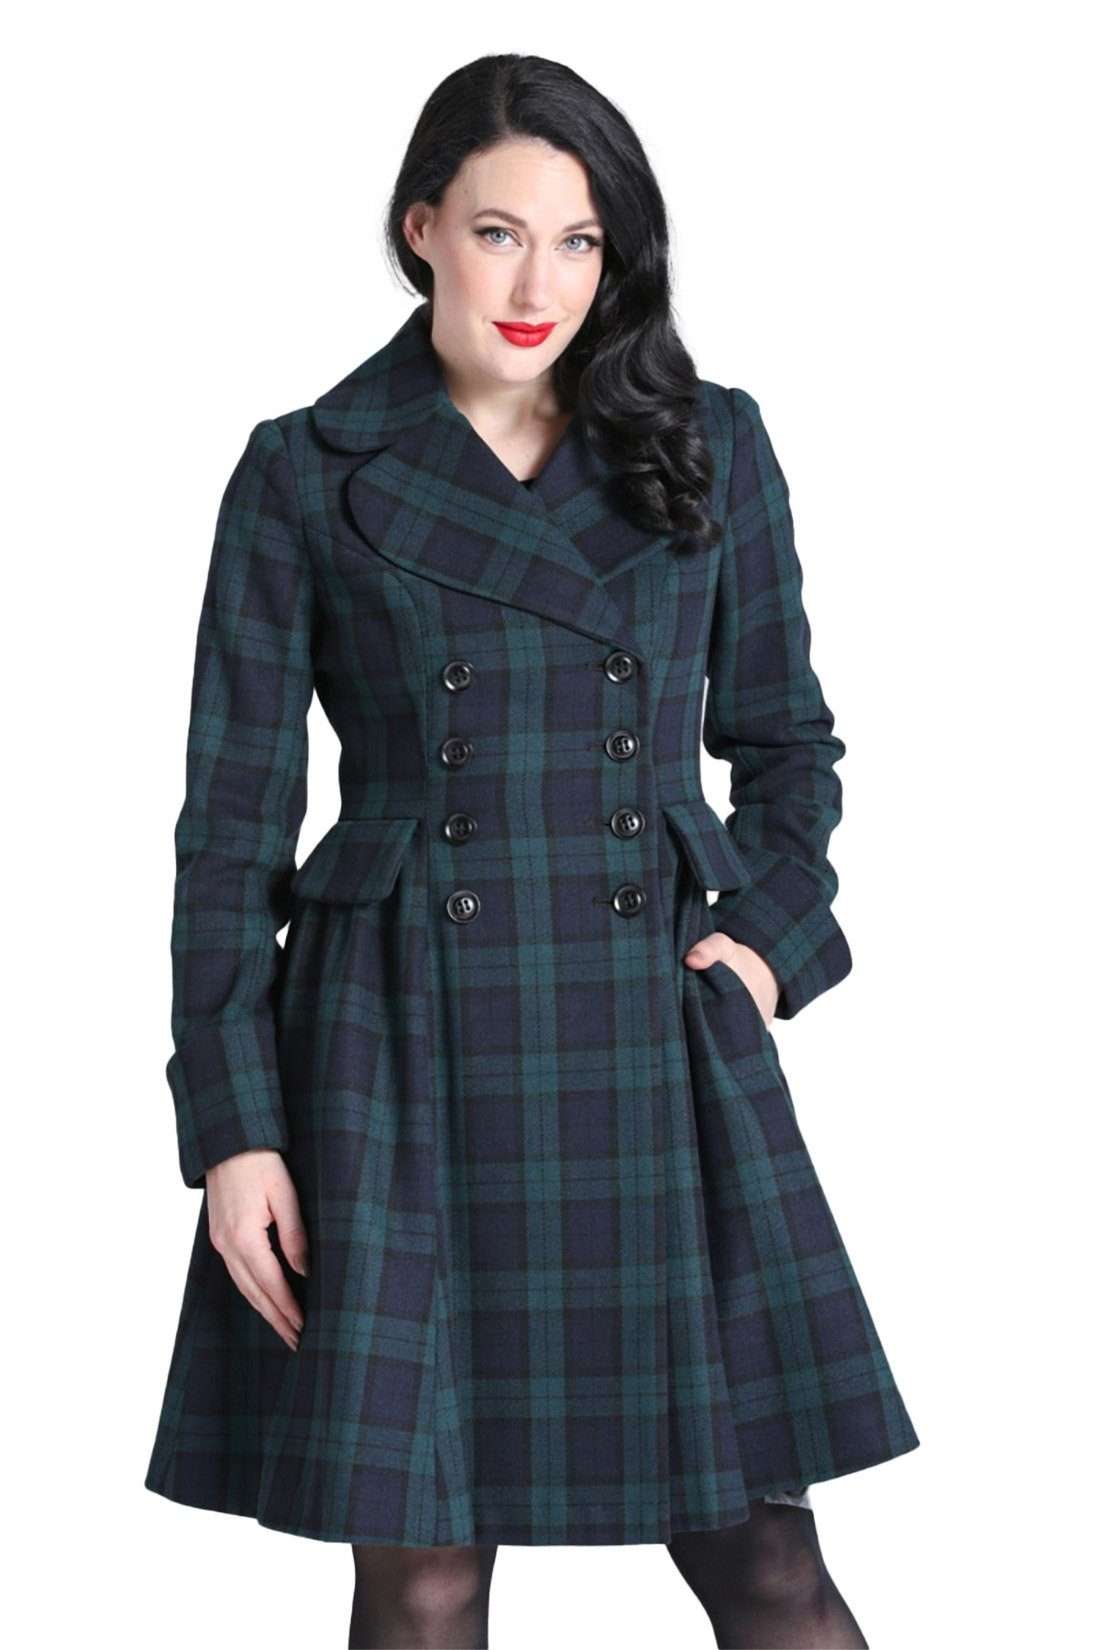 Зимнее пальто Alessandra Tartan Green в клетку в стиле ретро, винтажное зимнее пальто